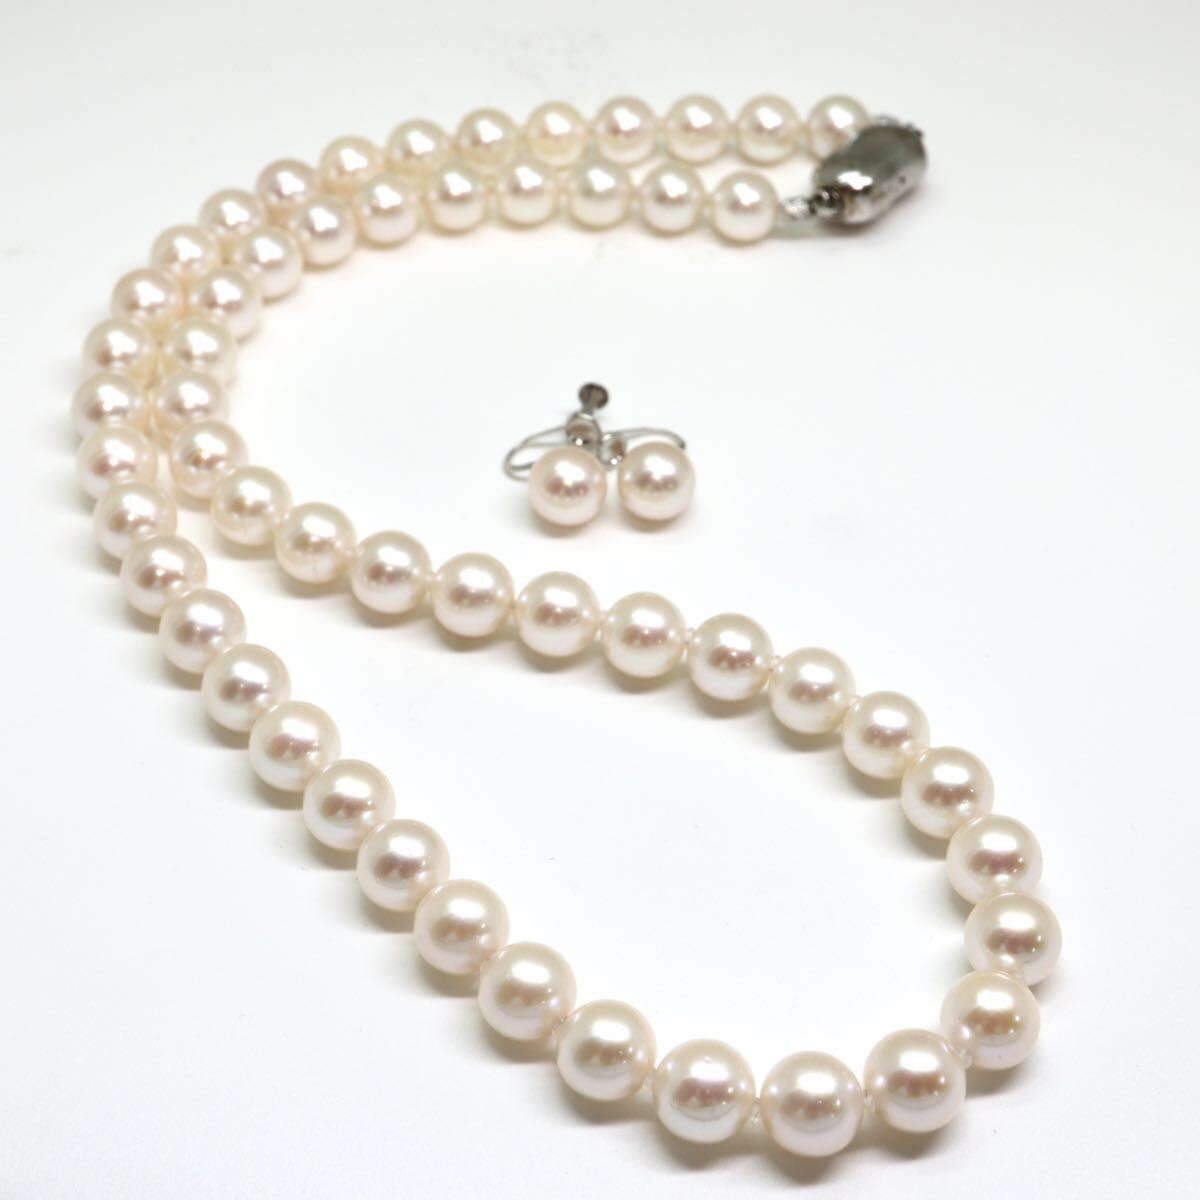 鑑別書付き!!《アコヤ本真珠ネックレス&K14WGイヤリング》M 41.2g 約45cm 約7.5-8.0mm珠 pearl パール necklace jewelry DI1/EA4_画像6